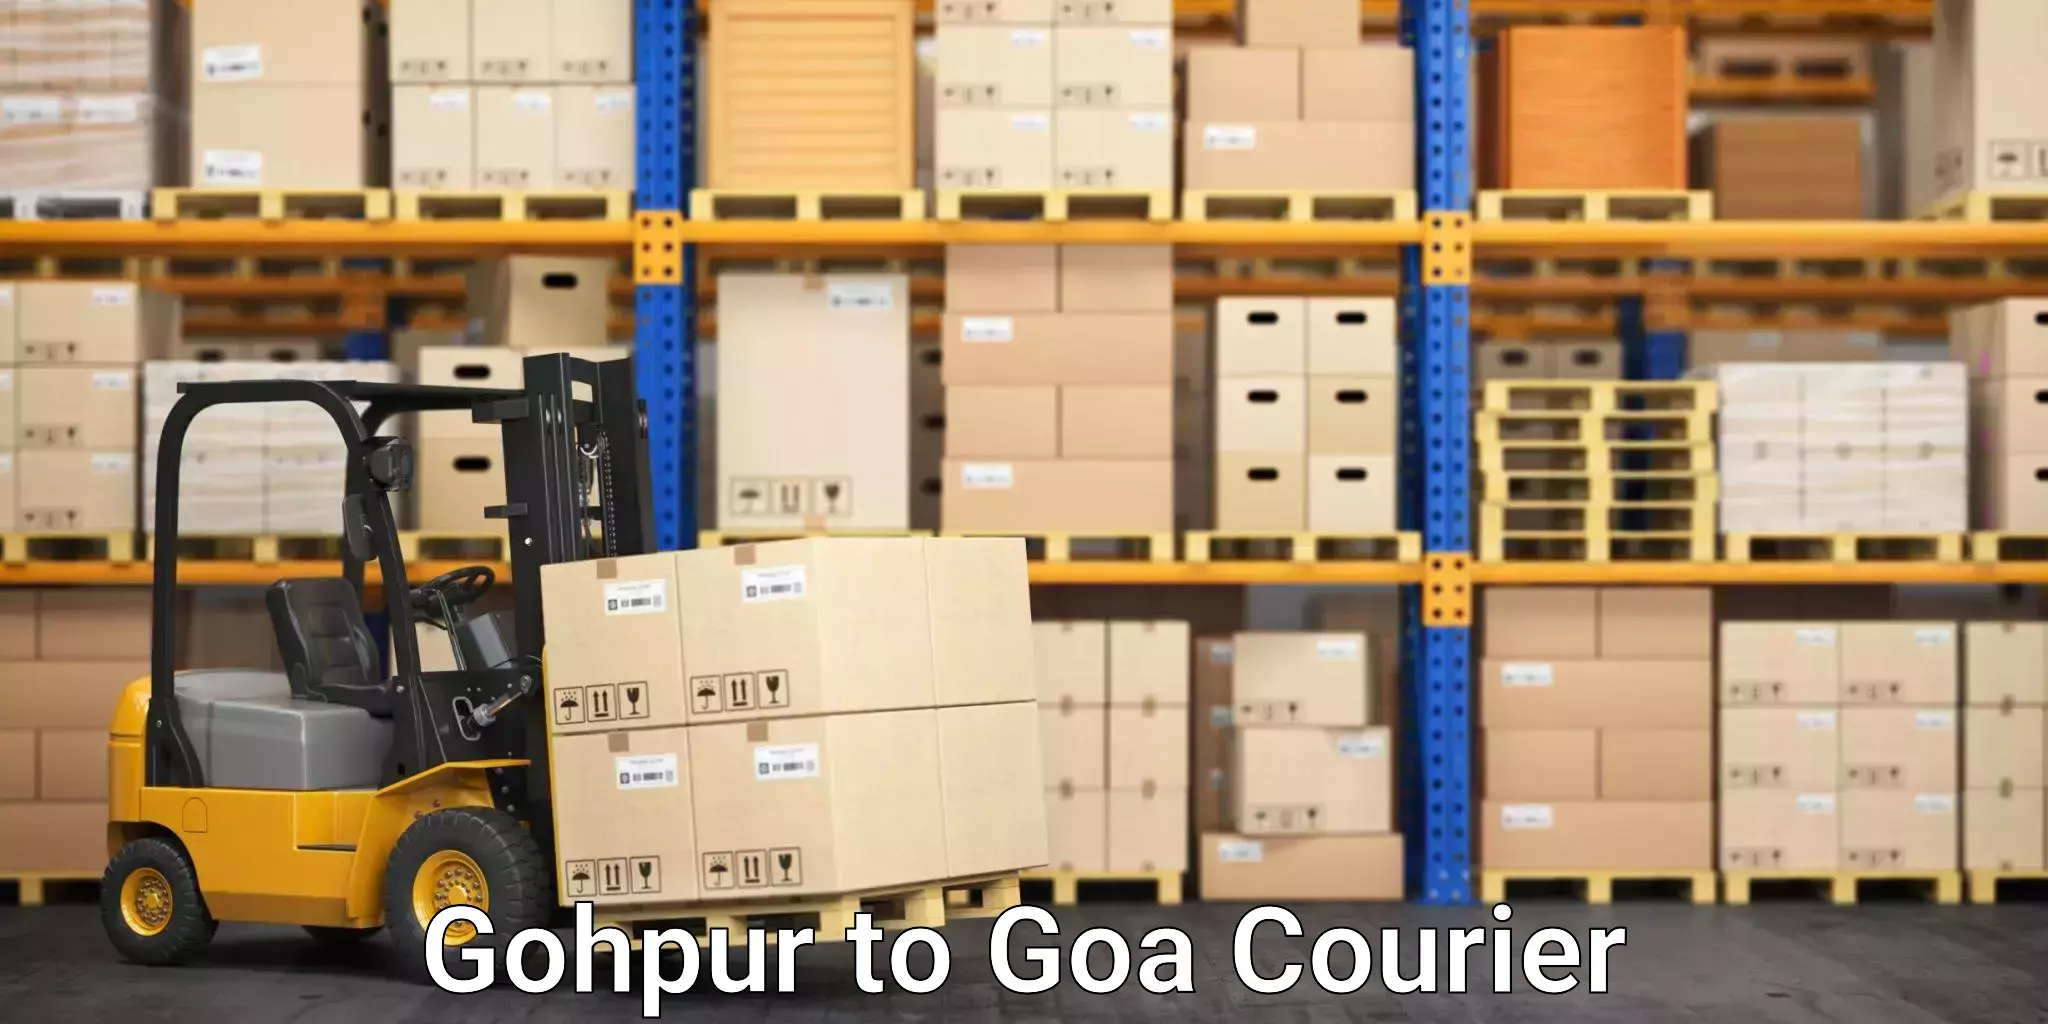 Flexible parcel services Gohpur to Goa University